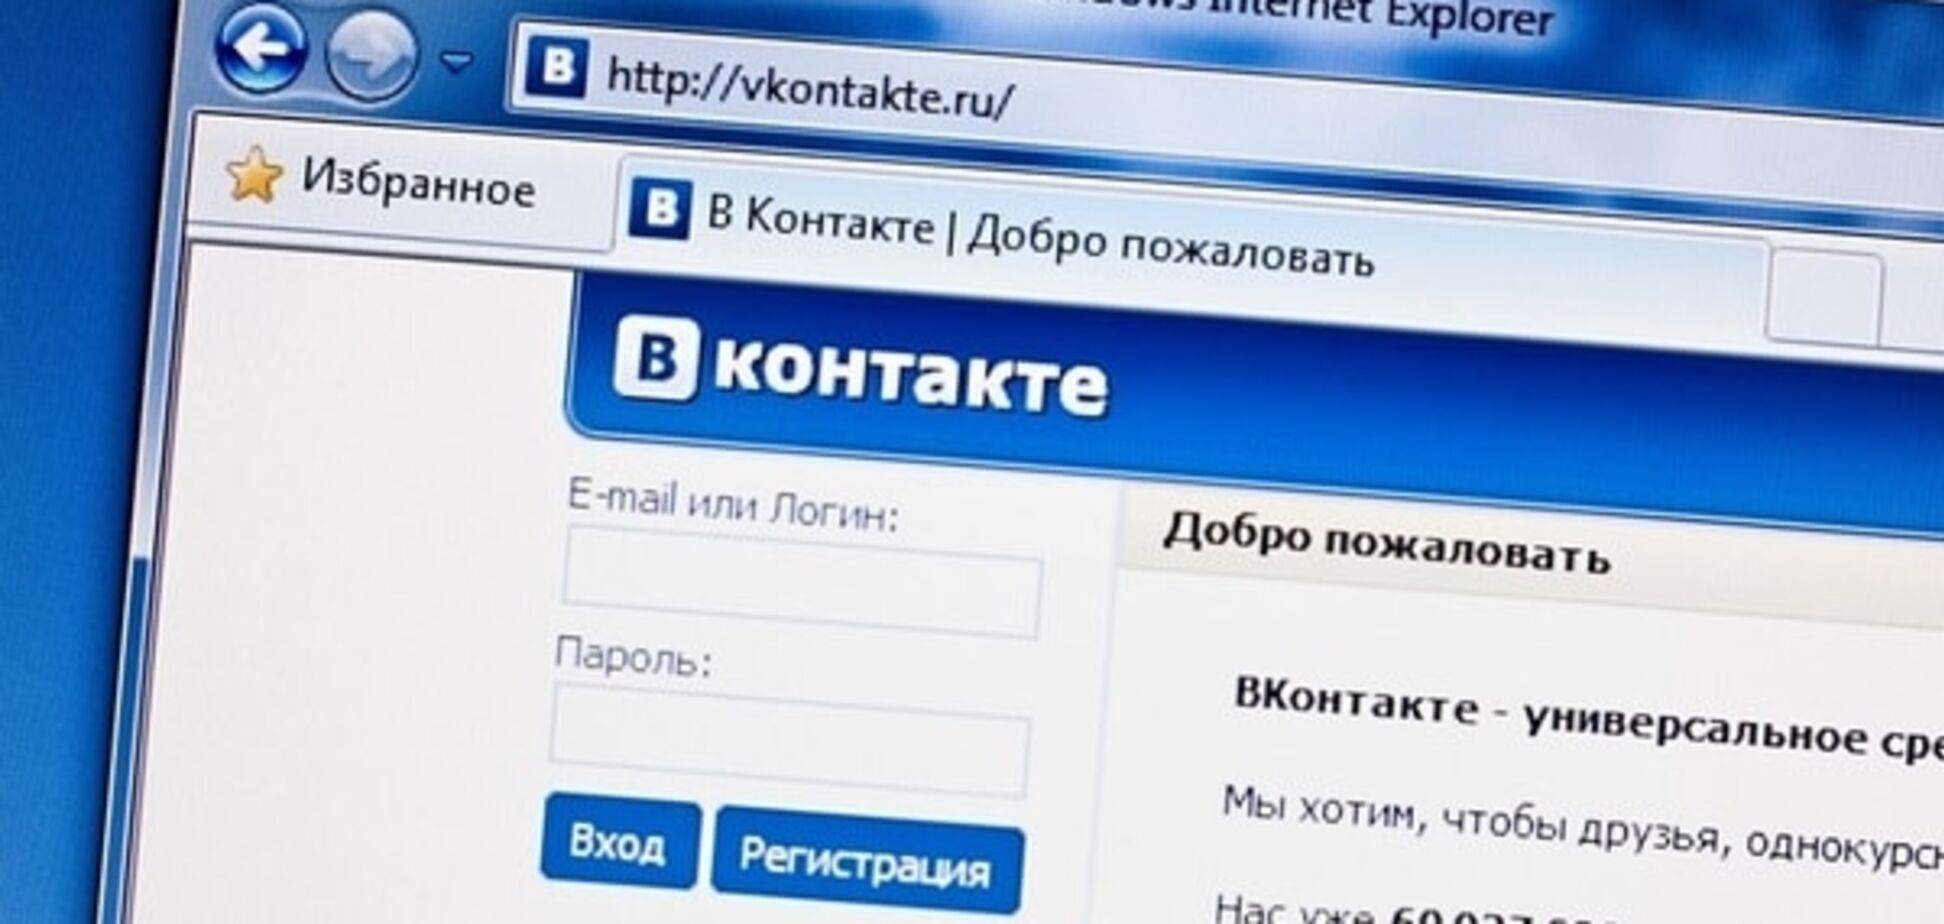 Из 'ВКонтакте' похитили данные сотни тысяч пользователей